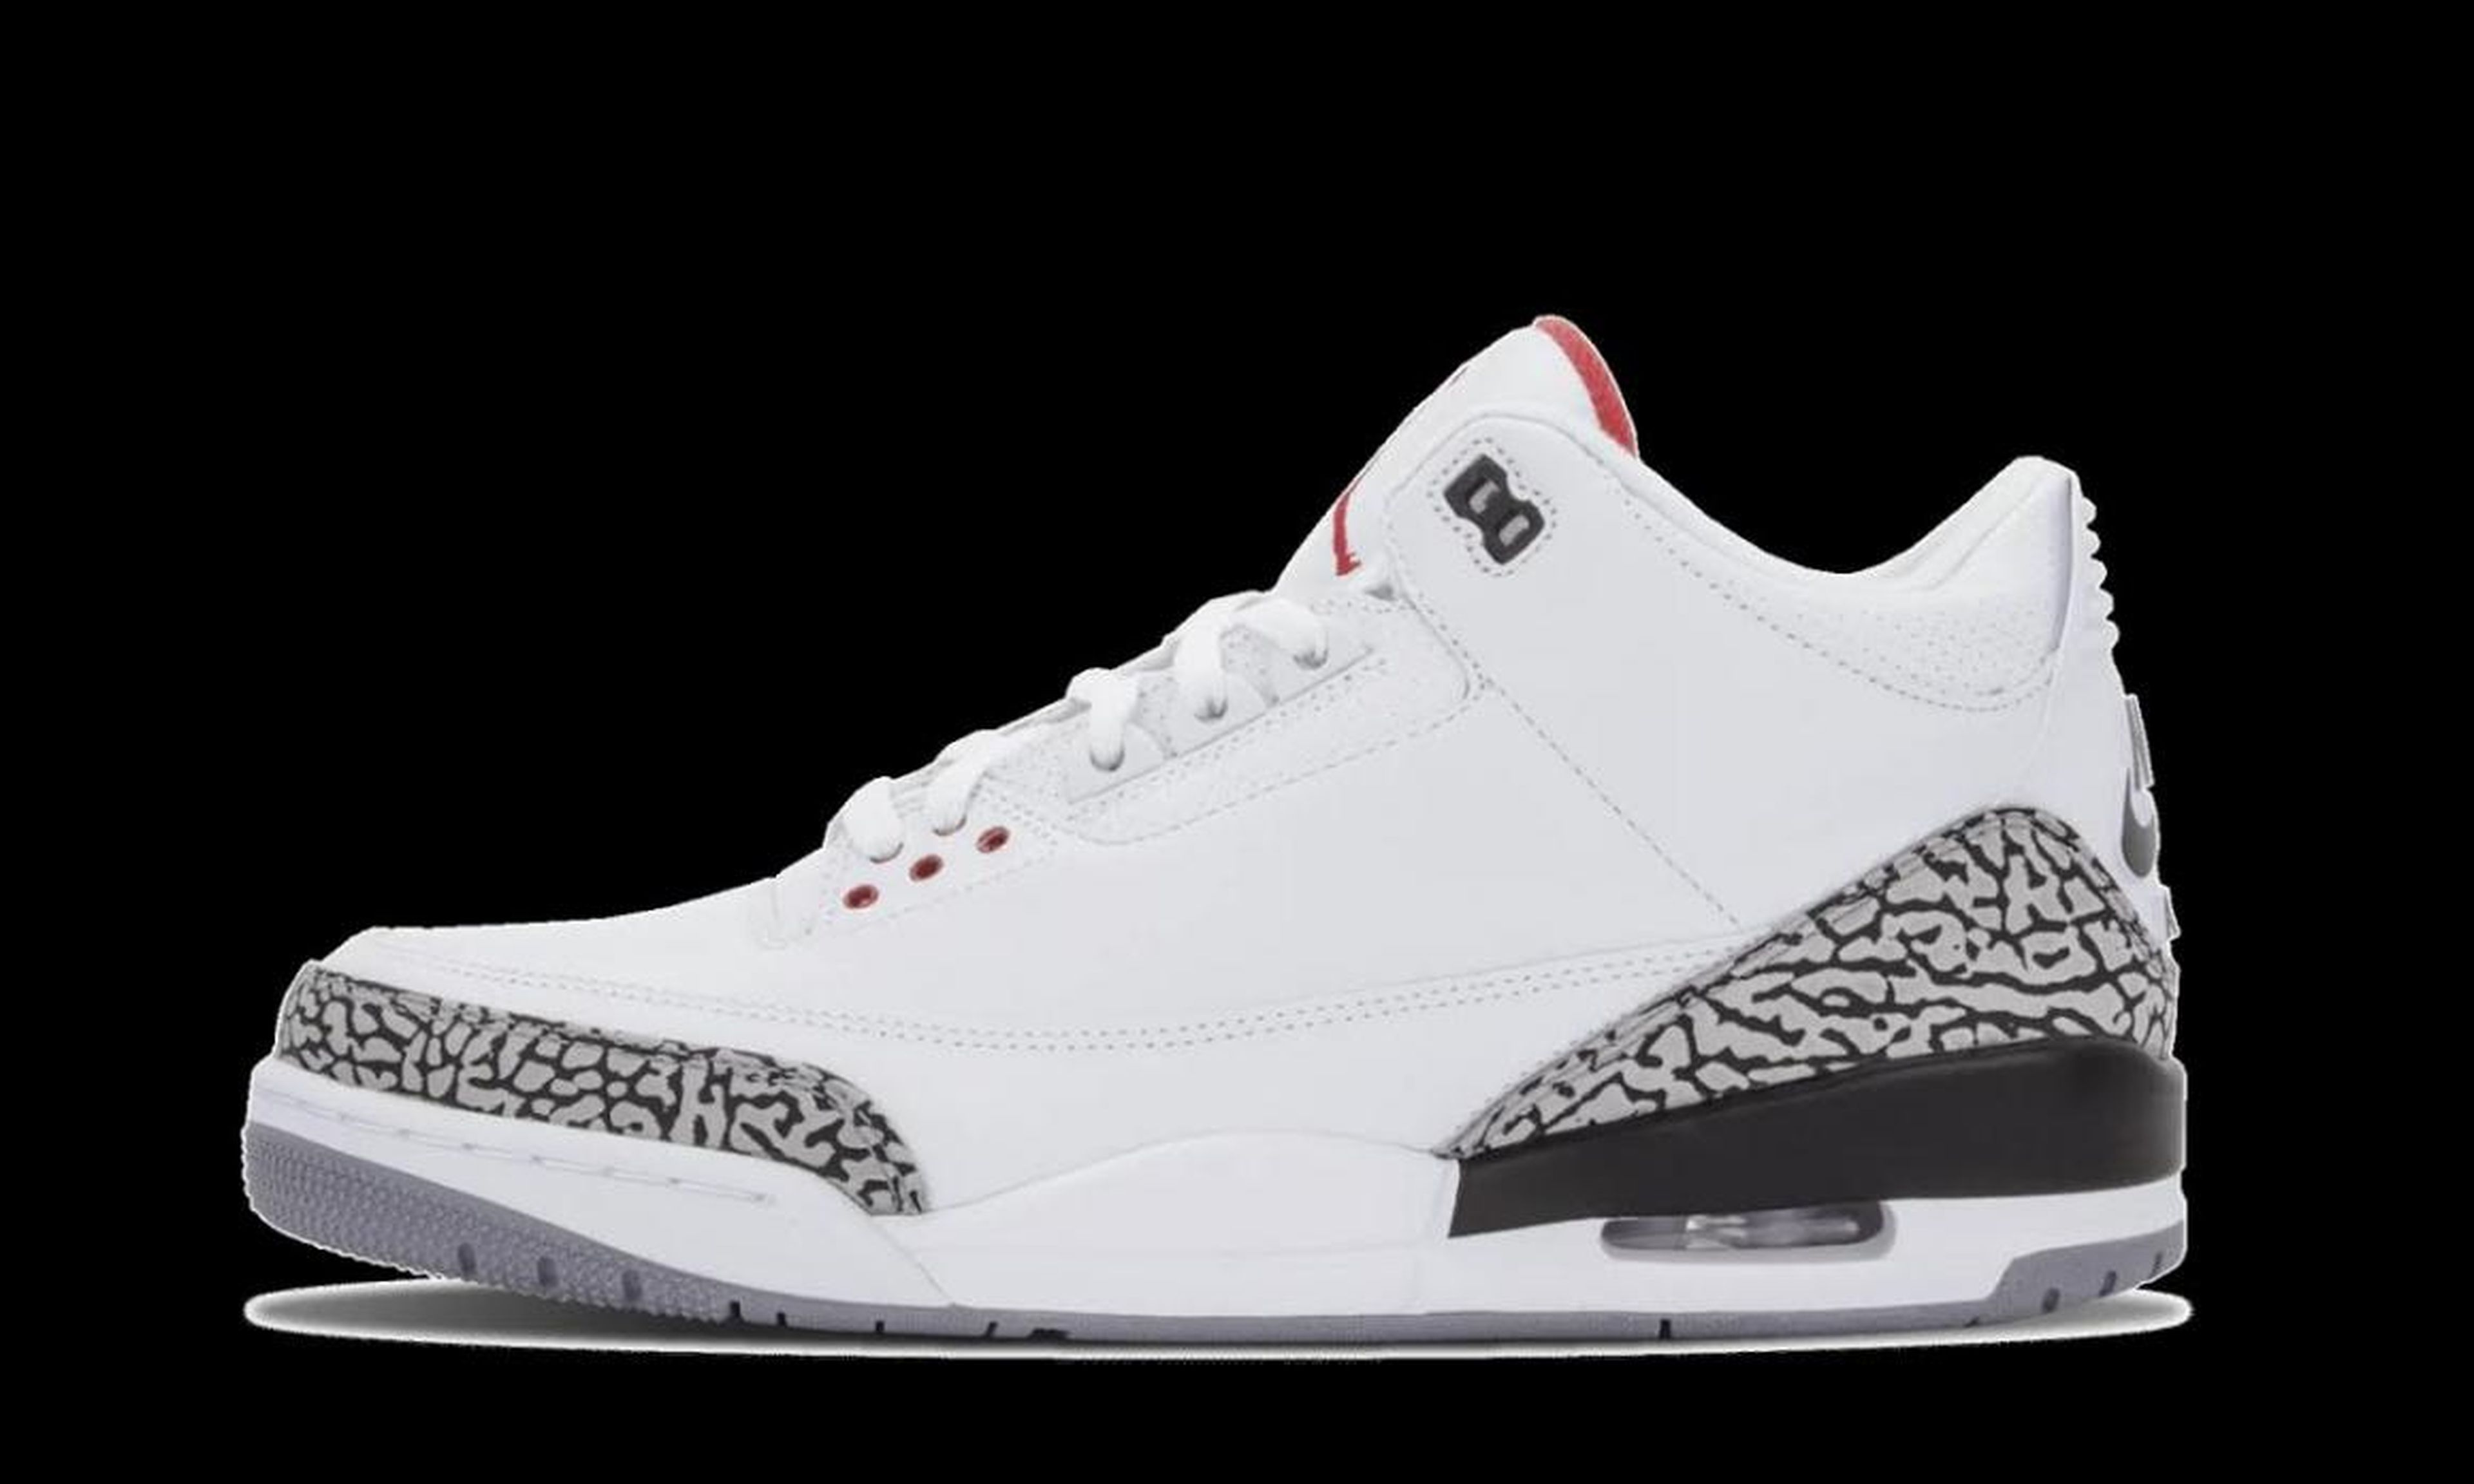 2013: Air Jordan 3 OG '88 White/Cement